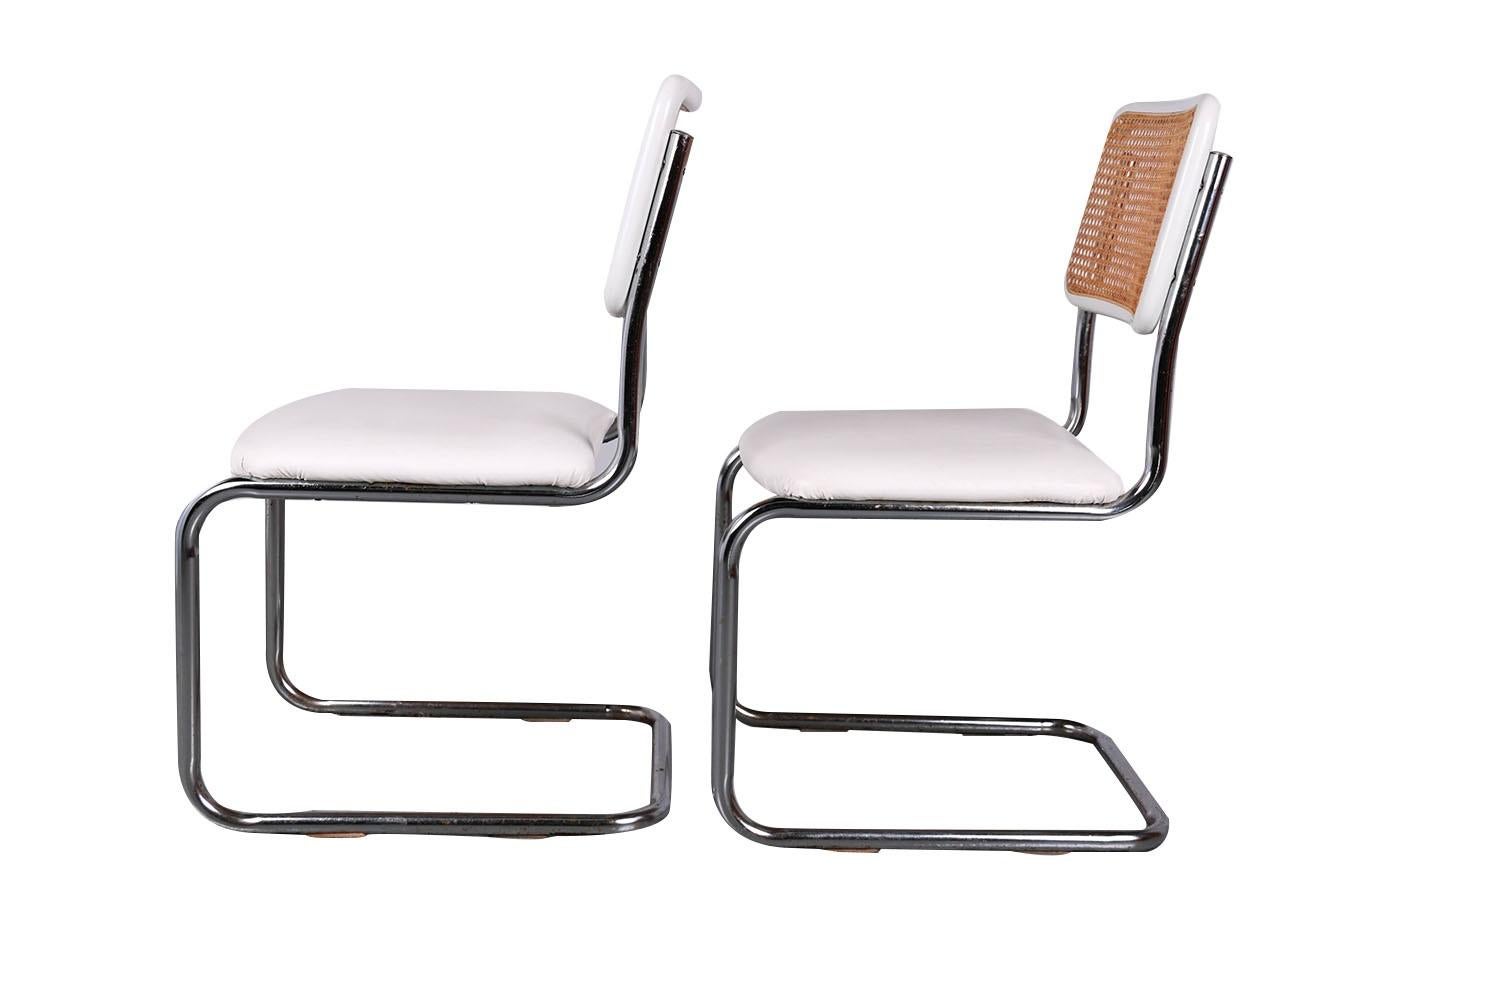 Une paire de chaises cantilever en bois courbé du milieu du siècle dernier, basée sur un design de Marcel Breuer. Il présente un magnifique design moderniste en porte-à-faux chromé, fait de bois et de cannes tissées à la main, des cadres tubulaires